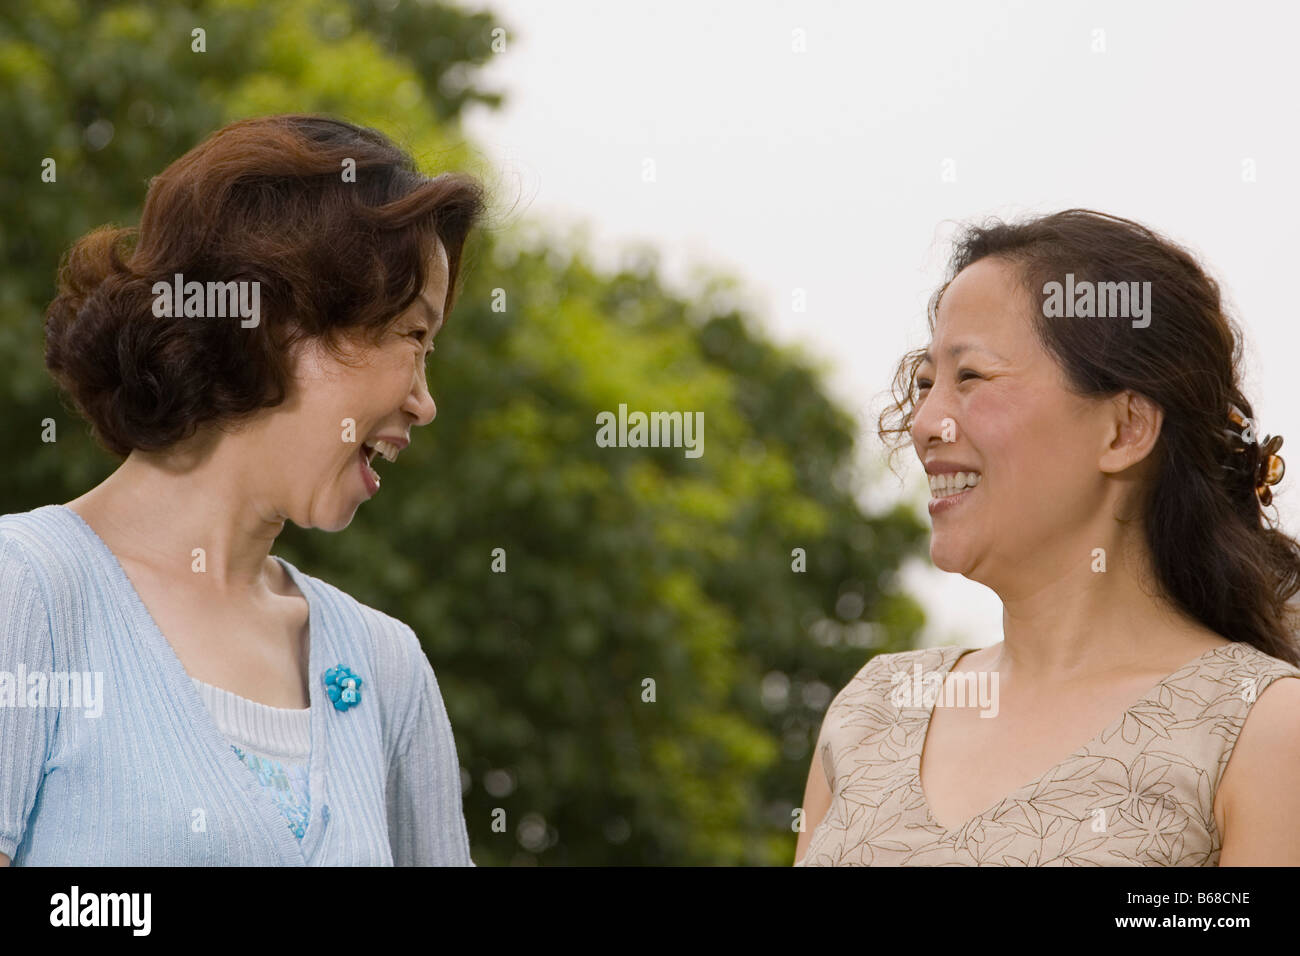 Zwei Reife Frauen sahen einander und lächelnd in Nahaufnahme Stockfoto